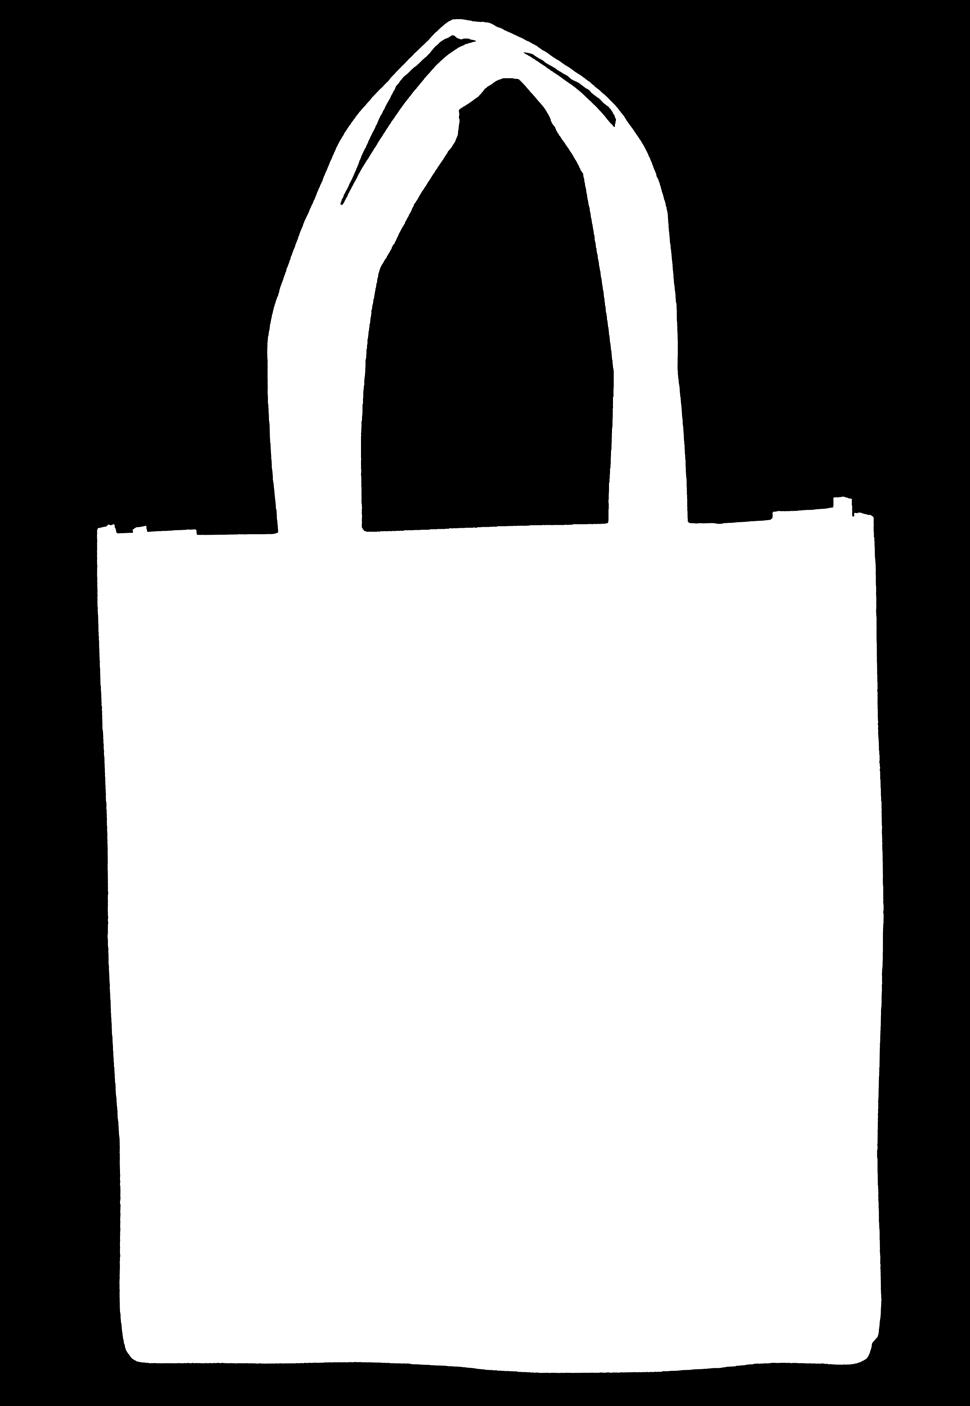 A Eco shopping bag with Xmas motif Non-woven 100 g/m² ecological shopping